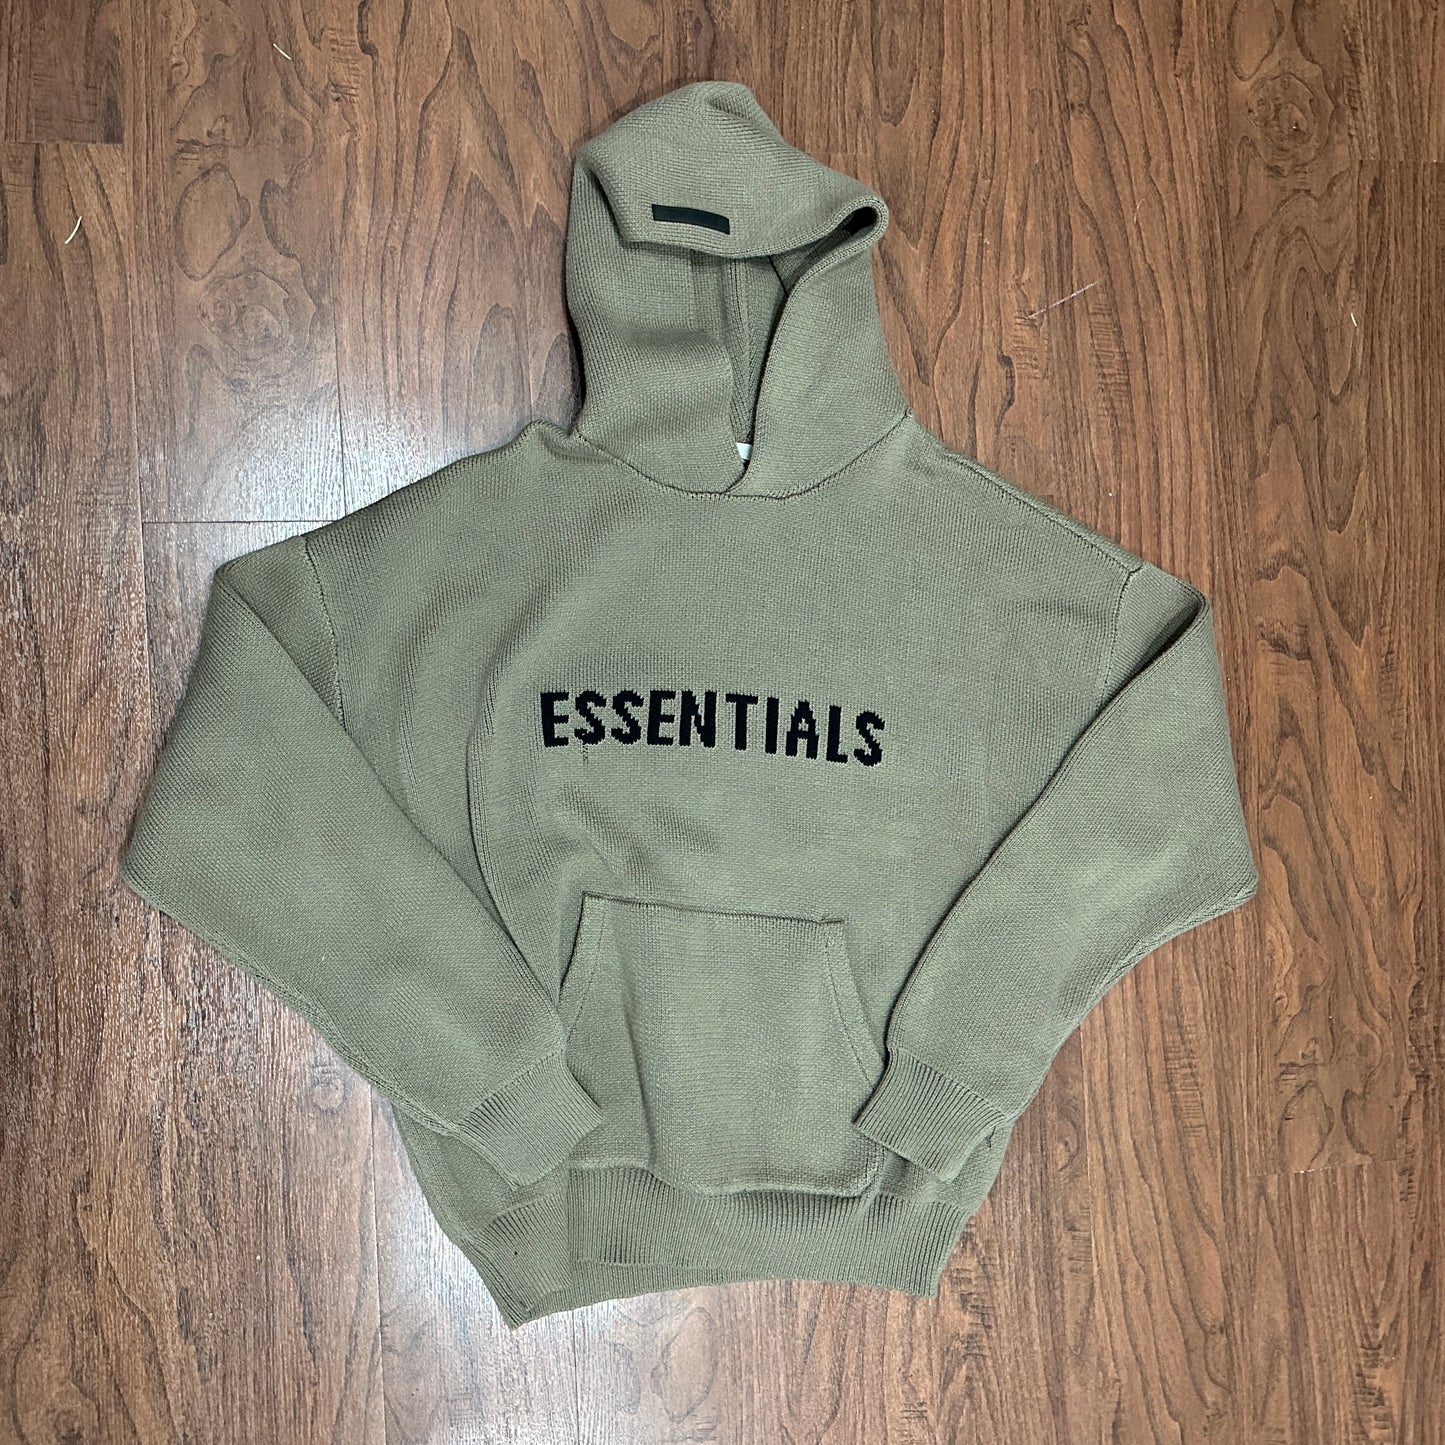 Essentials Knit Harvest Sweatshirt (SIZE XL)